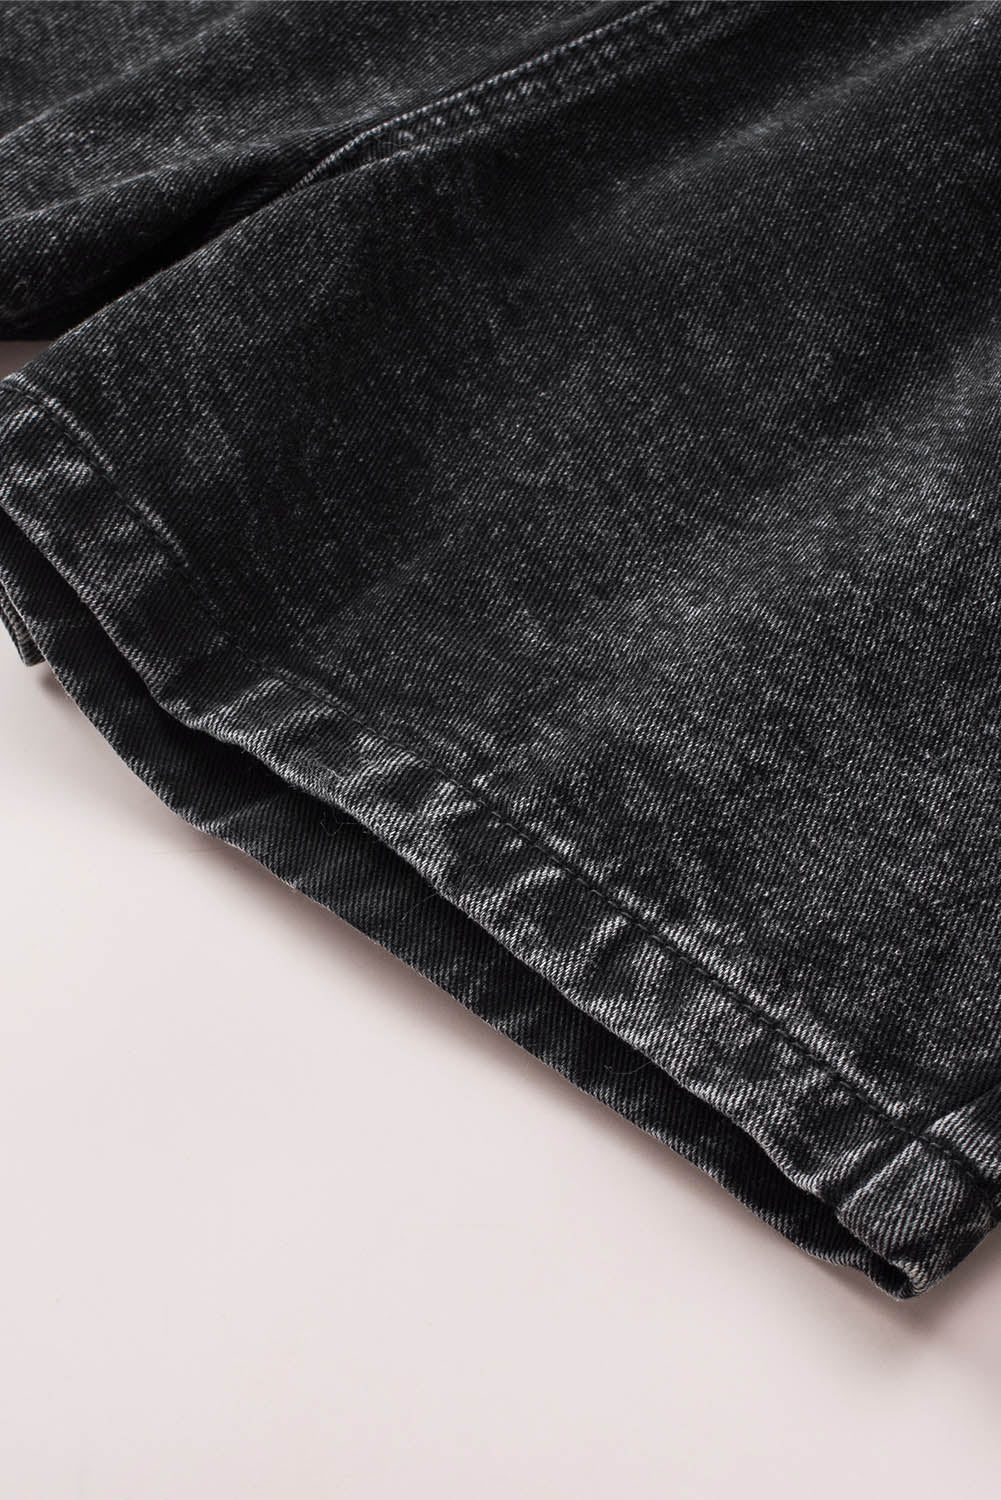 Črne retro kratke hlače iz jeansa z visokim pasom in elastiko, oprane z belilom